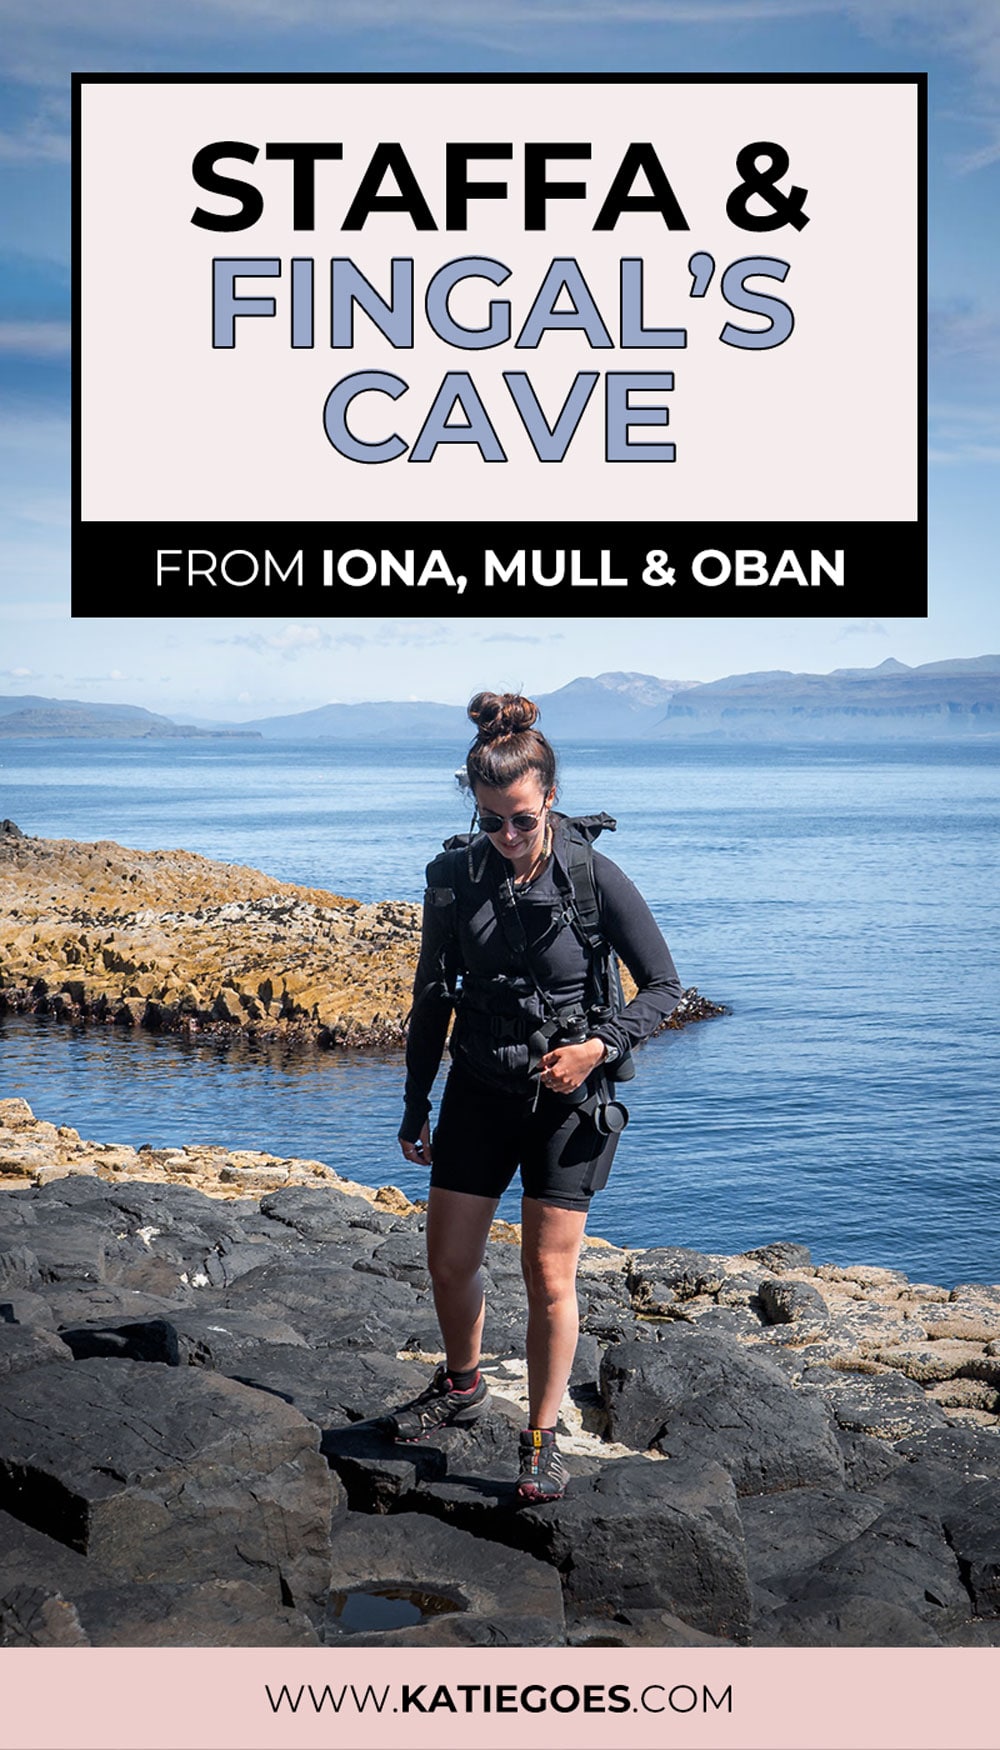 Isle of Staffa & Fingal's Cave: The Island Guide 9